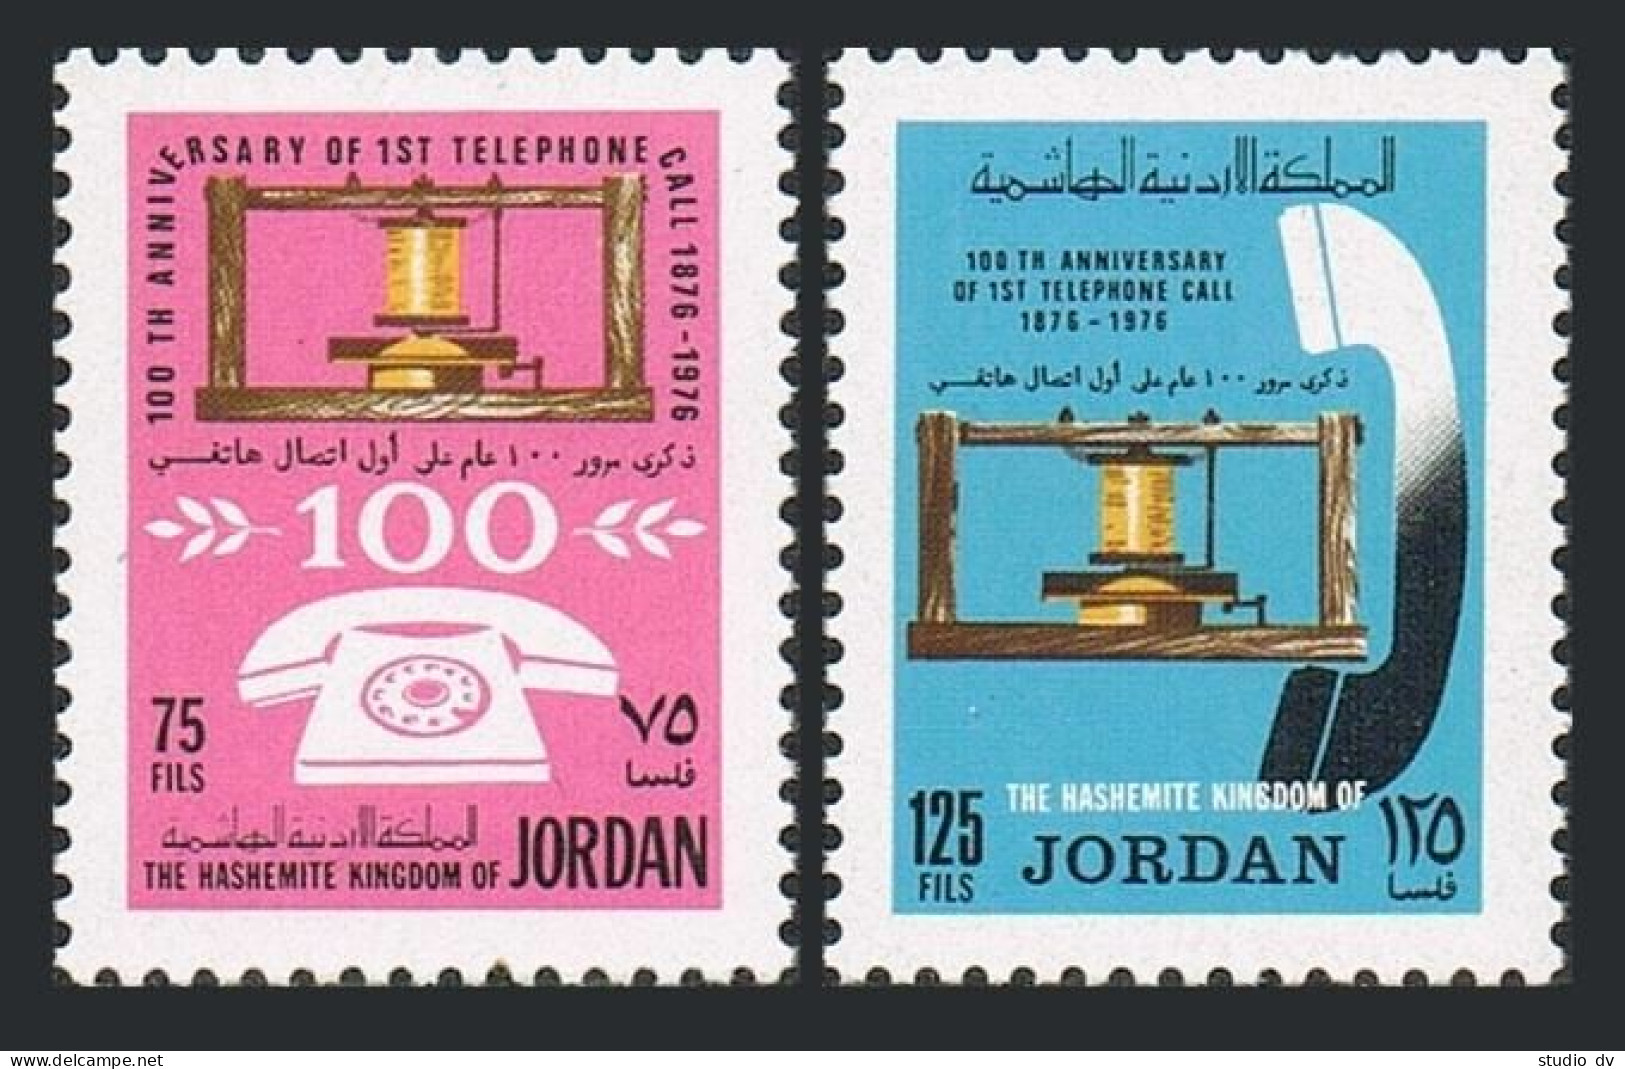 Jordan 999-1000,MNH.Michel 1067-1068. Centenary Of Telephone,1976. - Jordan